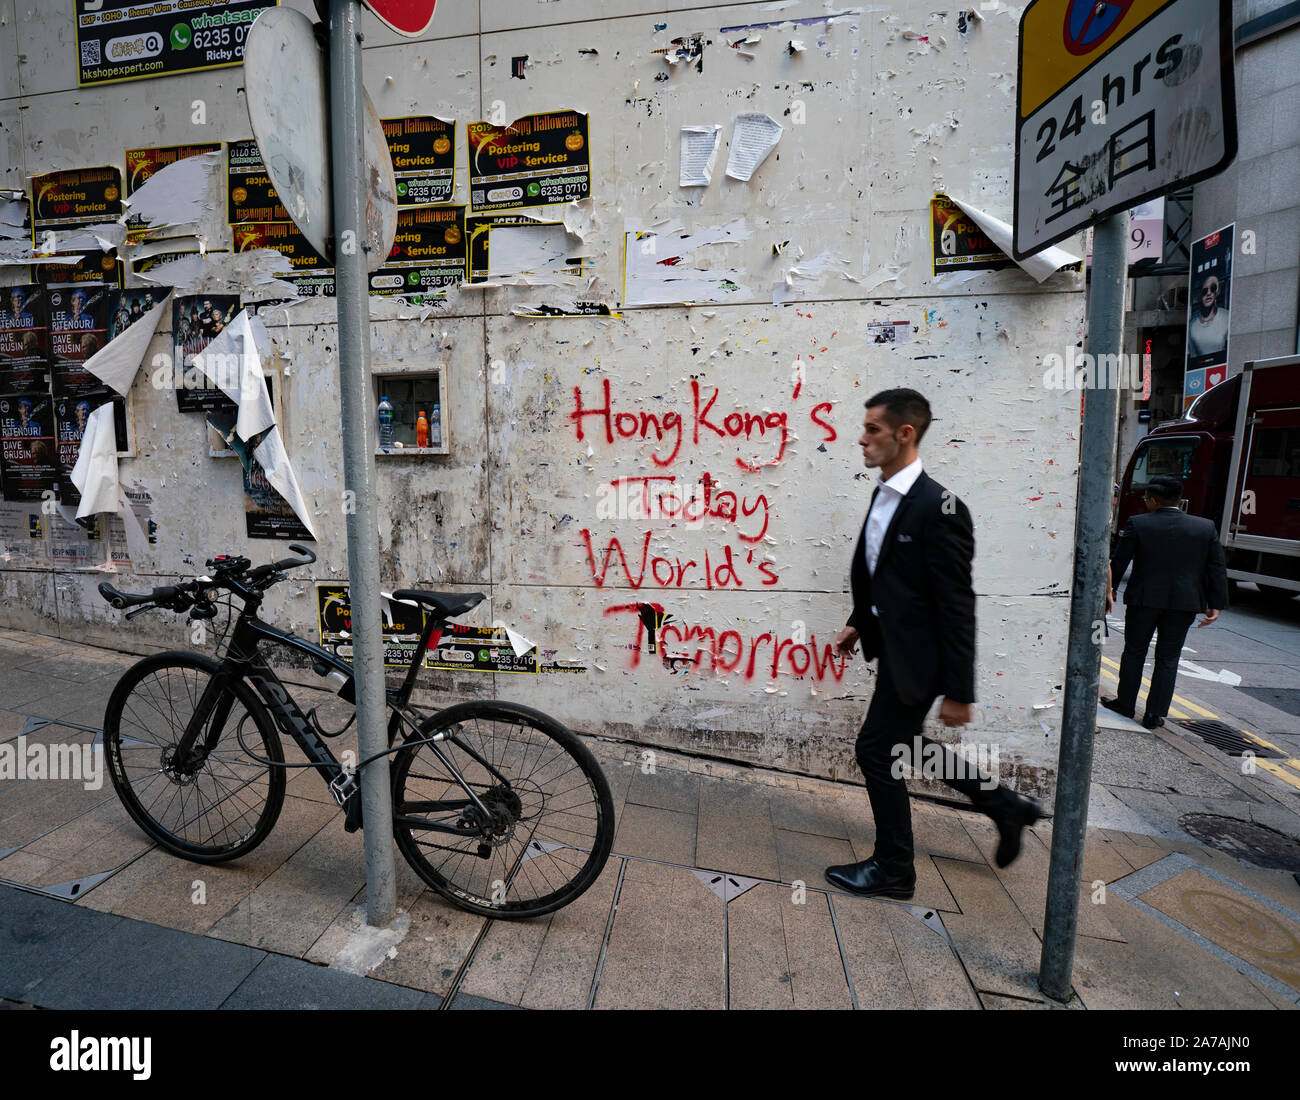 Pro-democrazia graffiti spruzzato sulla parete nel distretto centrale di Hong Kong Foto Stock